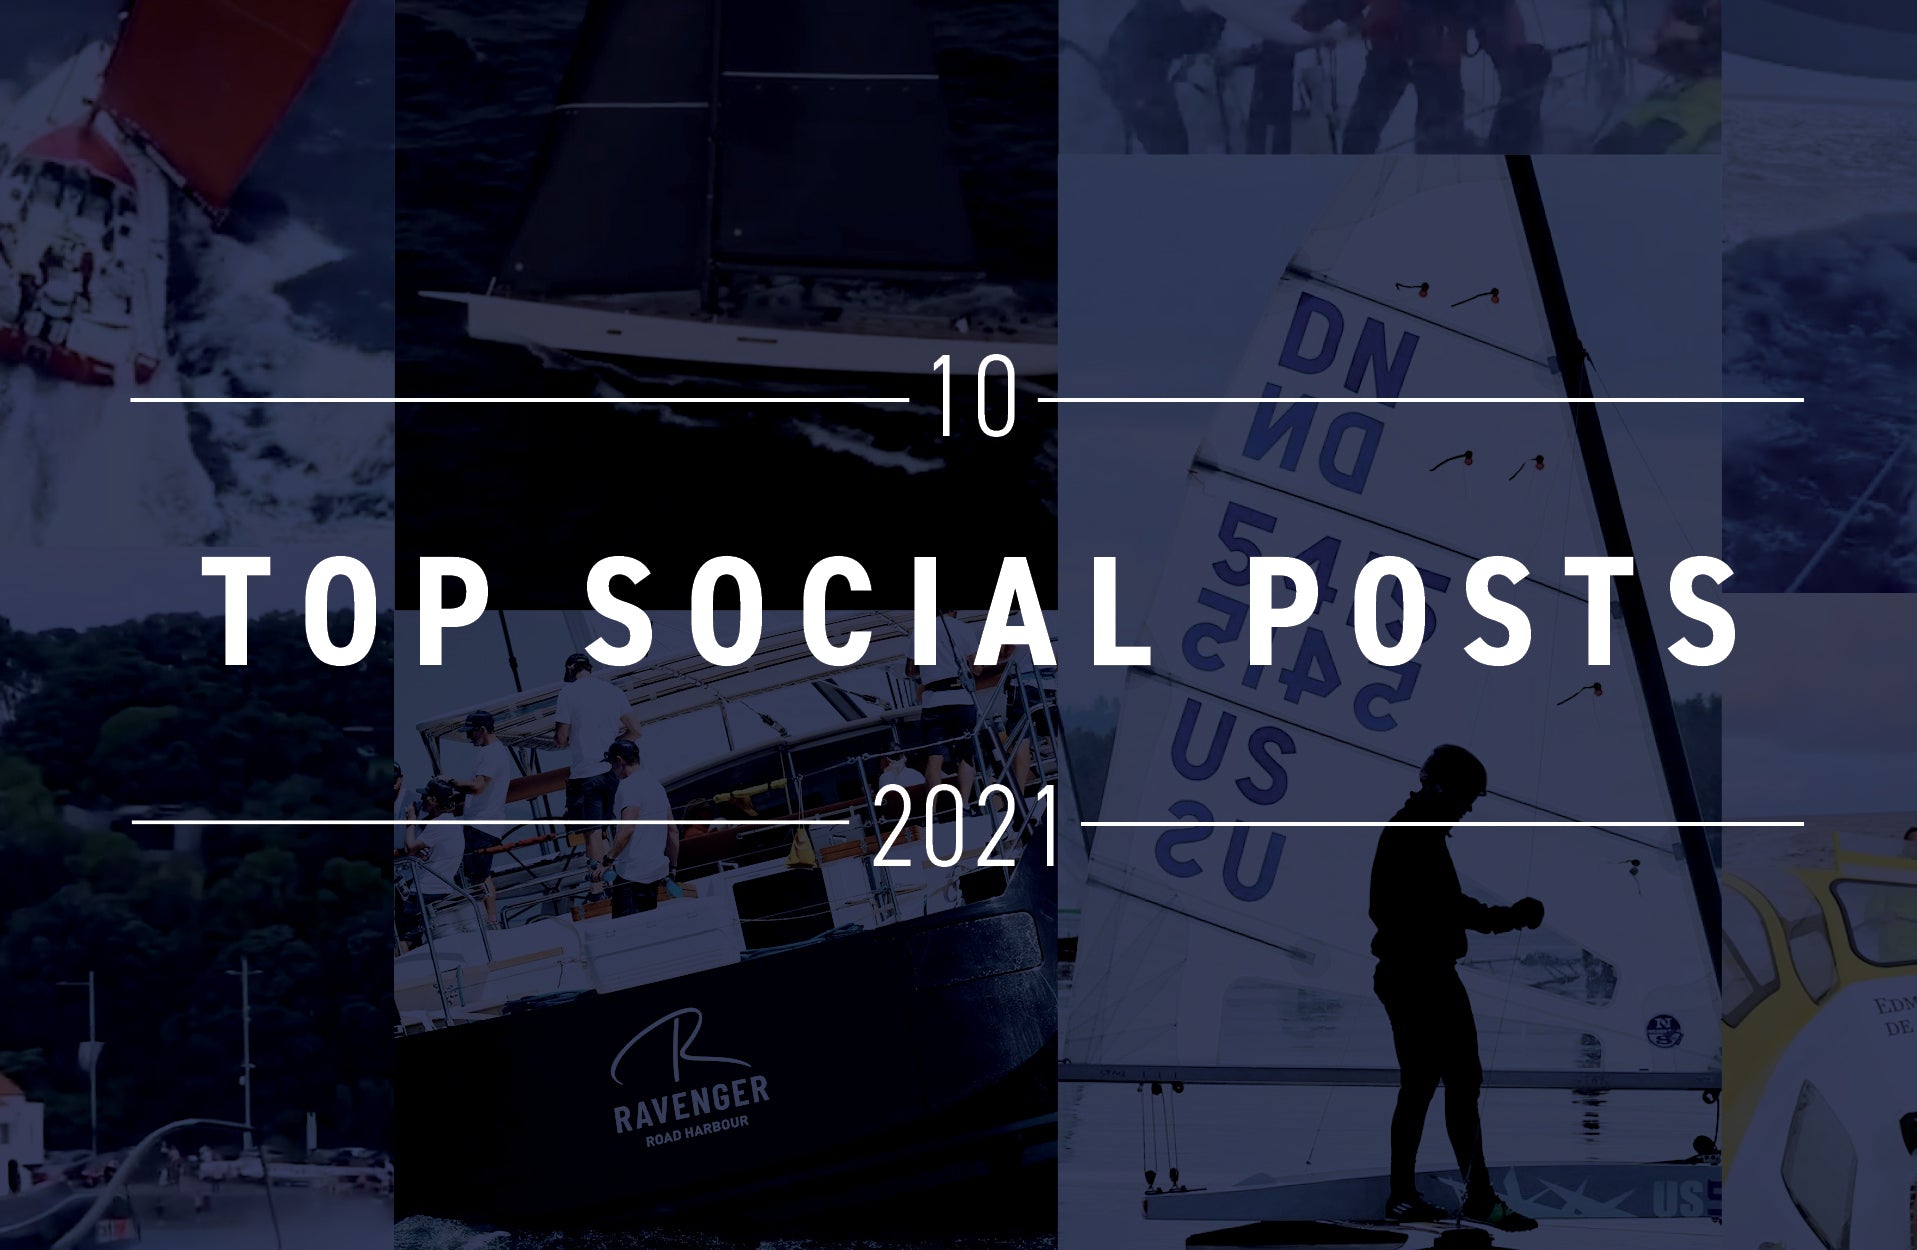 NORTH SAILS TOP 10 SOCIAL POSTS OF 2021